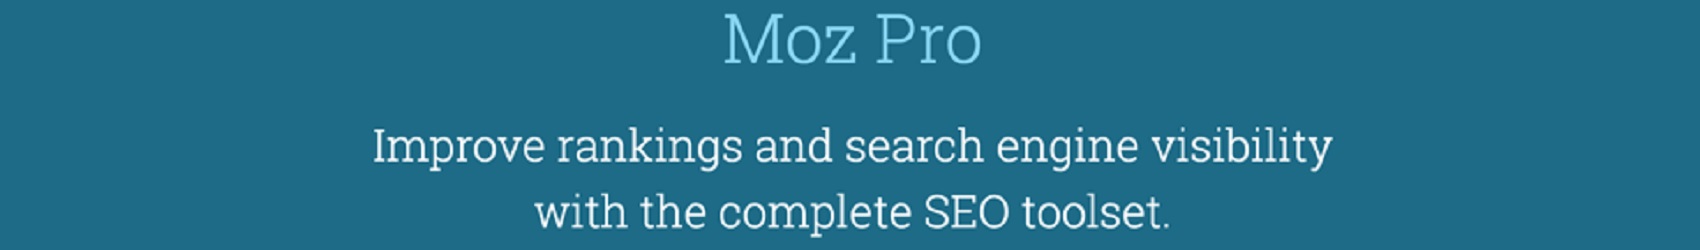 Group Buy MozPro 